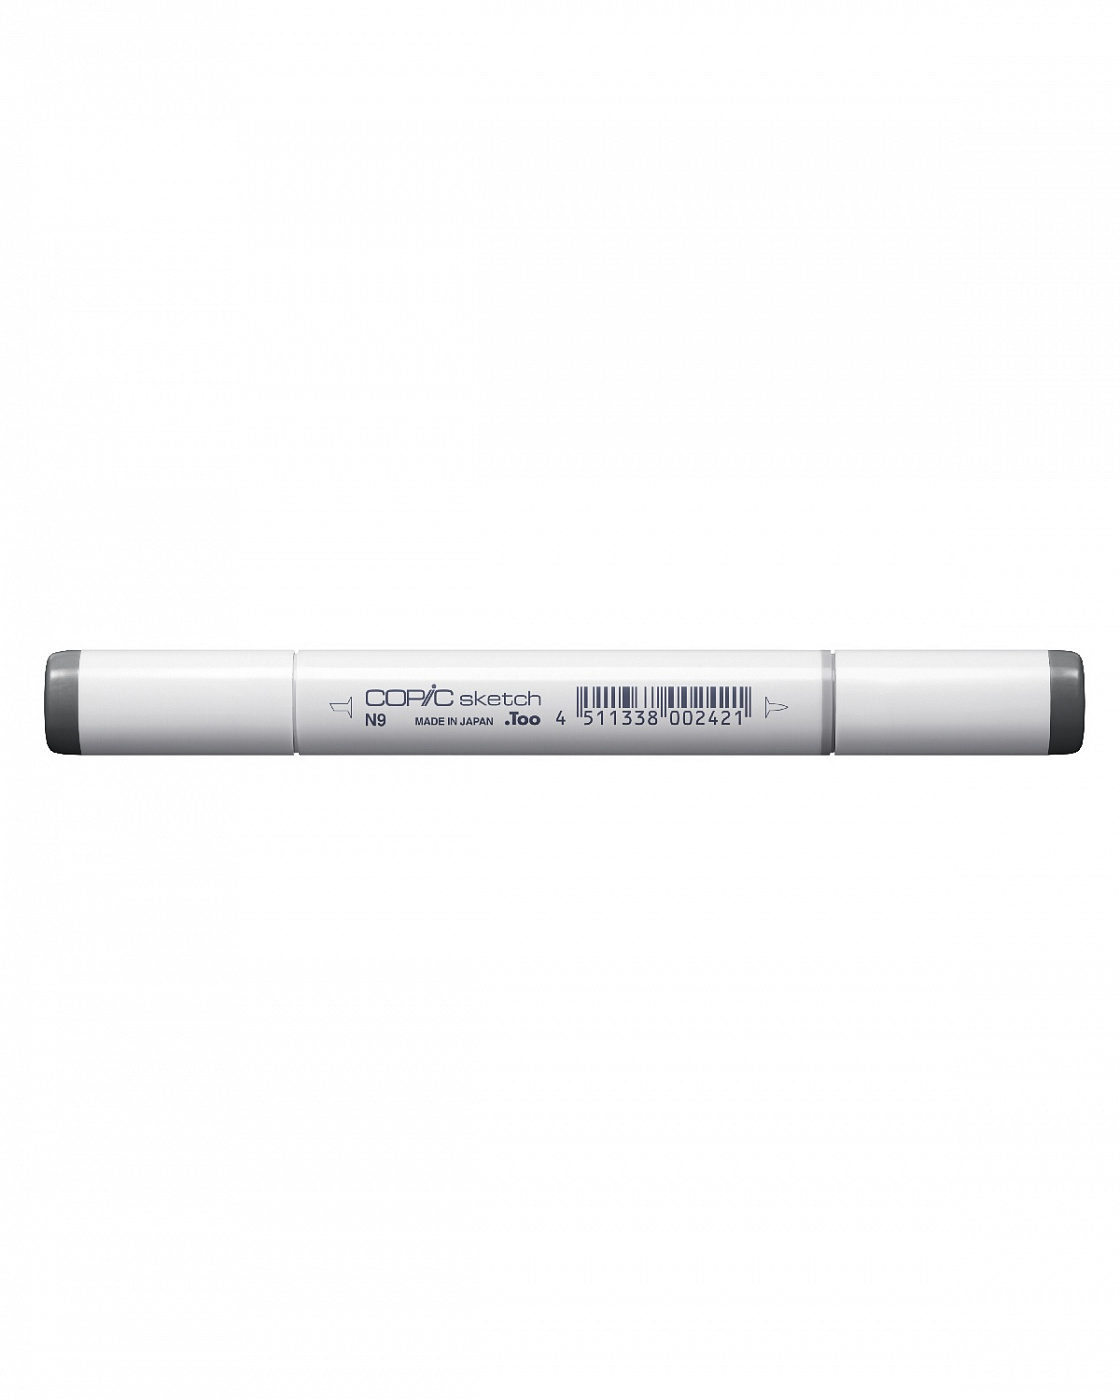 Маркер COPIC sketch N9 (нейтральный серый, neutral gray) (оттенок №9) маркер copic w0 теплый серый warm gray оттенок 0